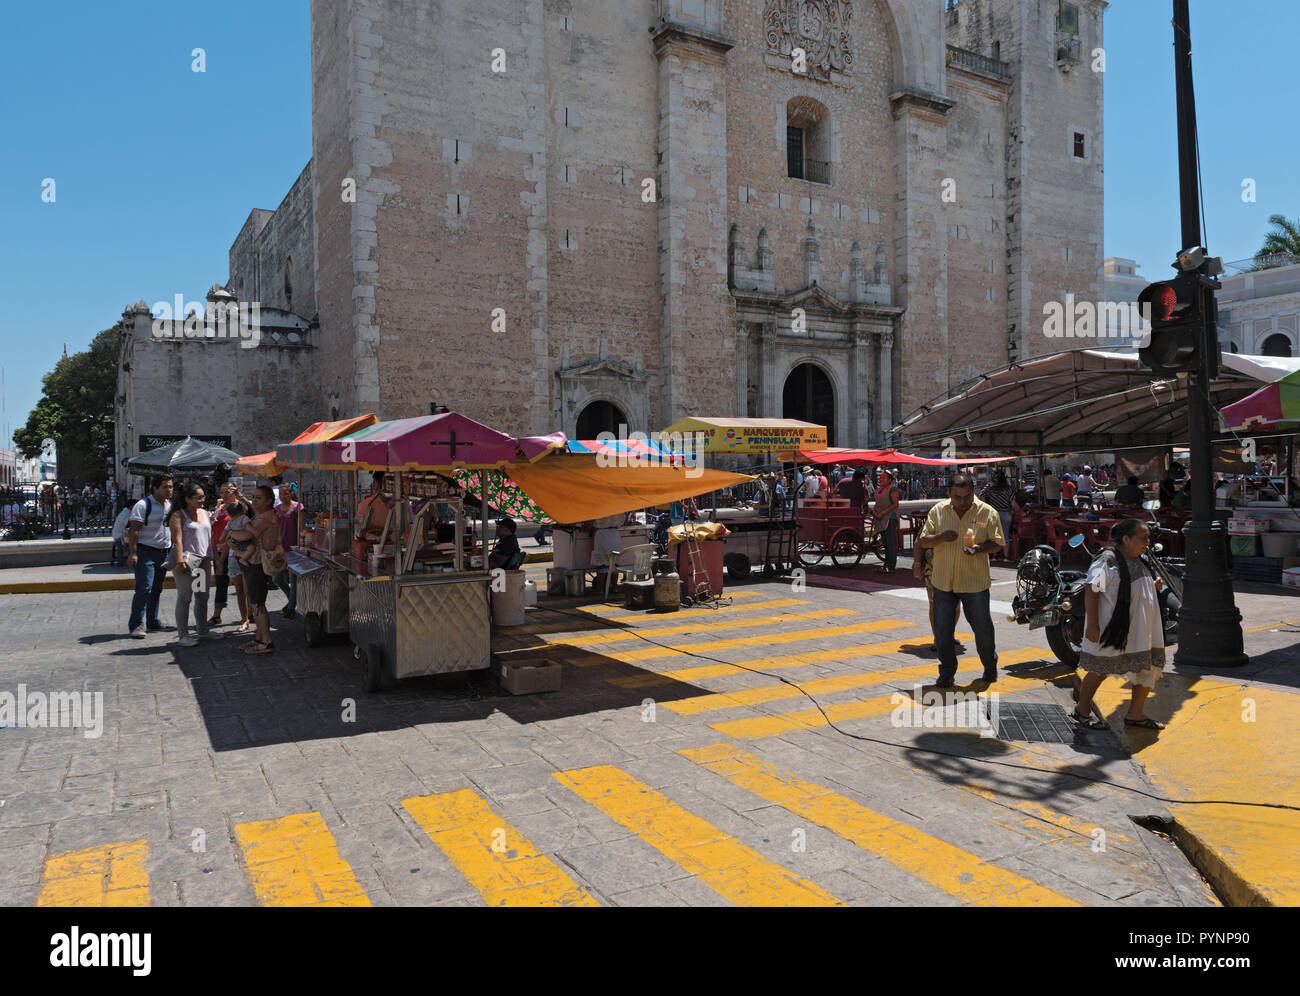 La cale au festival de rue dans la plaza de la Independencia le merida en domingo merida le dimanche. Banque D'Images